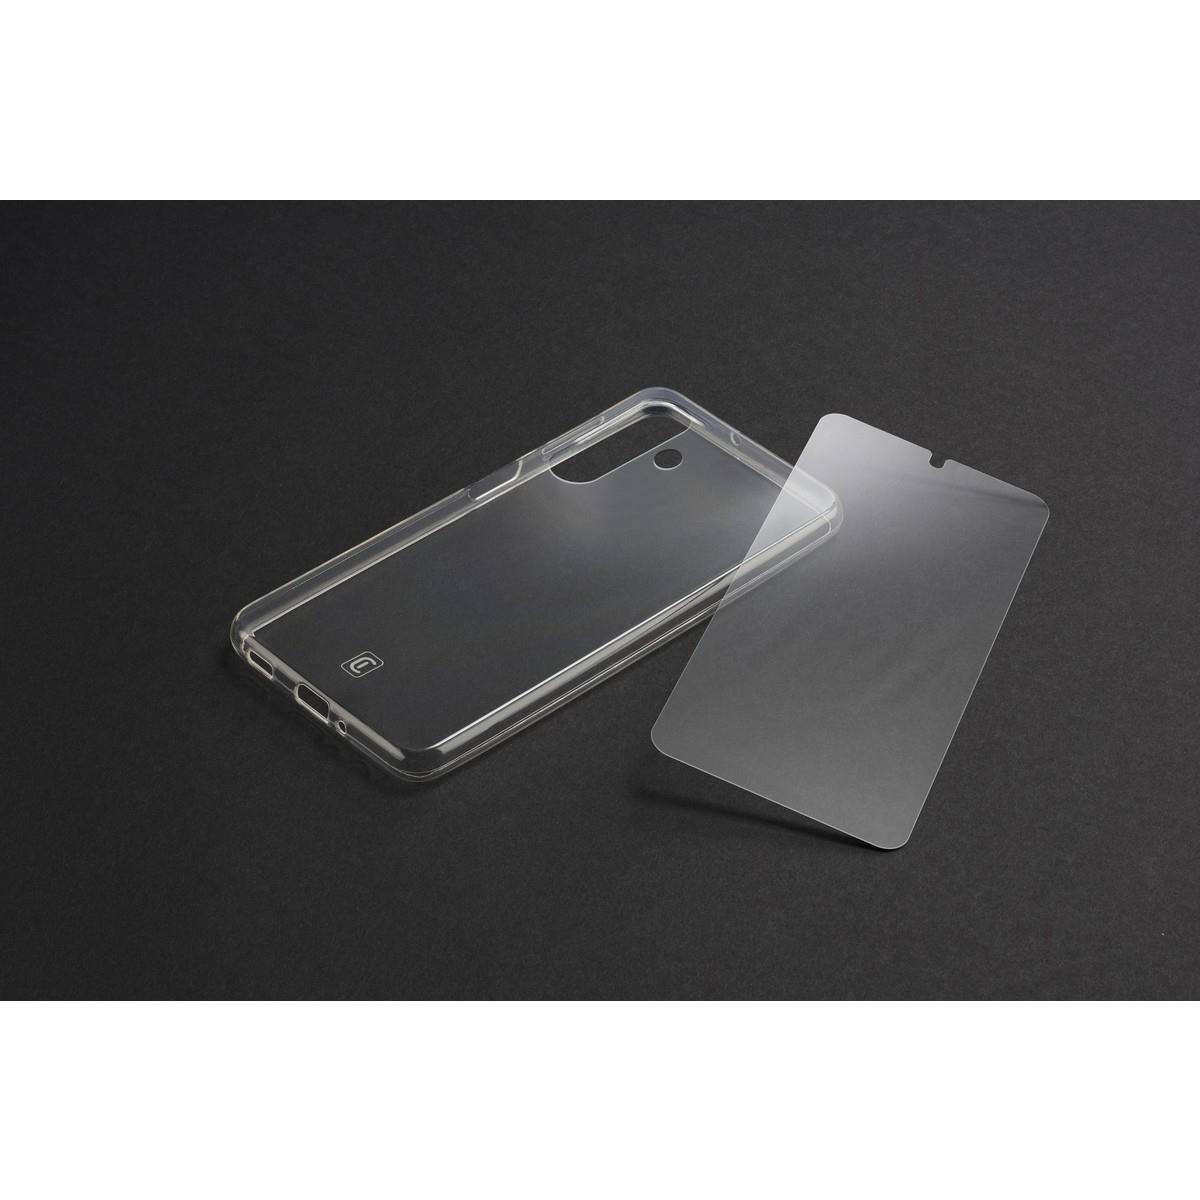 Set PROTECTION KIT aus Backcover und Schutzglas für Samsung Galaxy S24